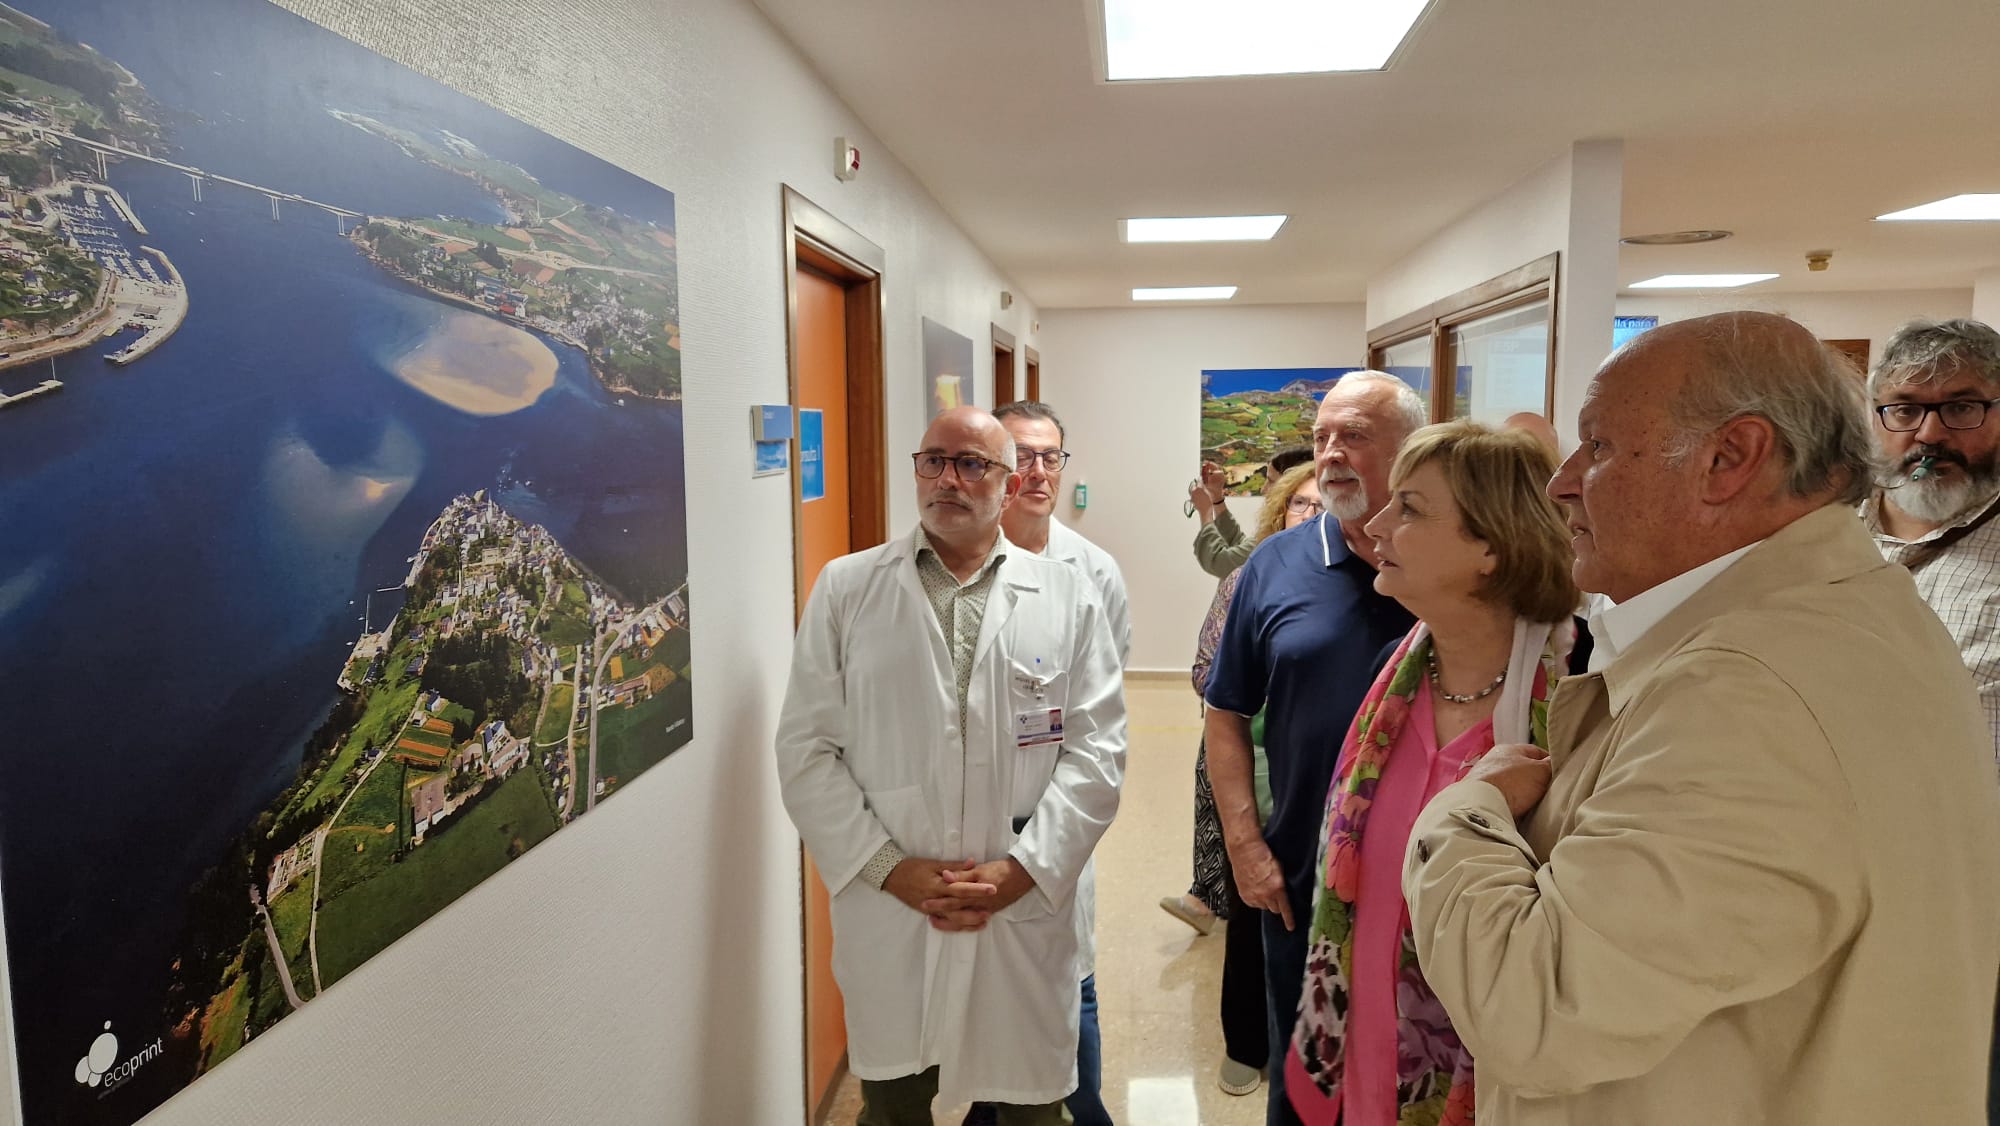 Imagen - El Hospital Universitario San Agustín expone doce imágenes con paisajes asturianos, cedidas por el fotógrafo avilesino Nardo Villaboy